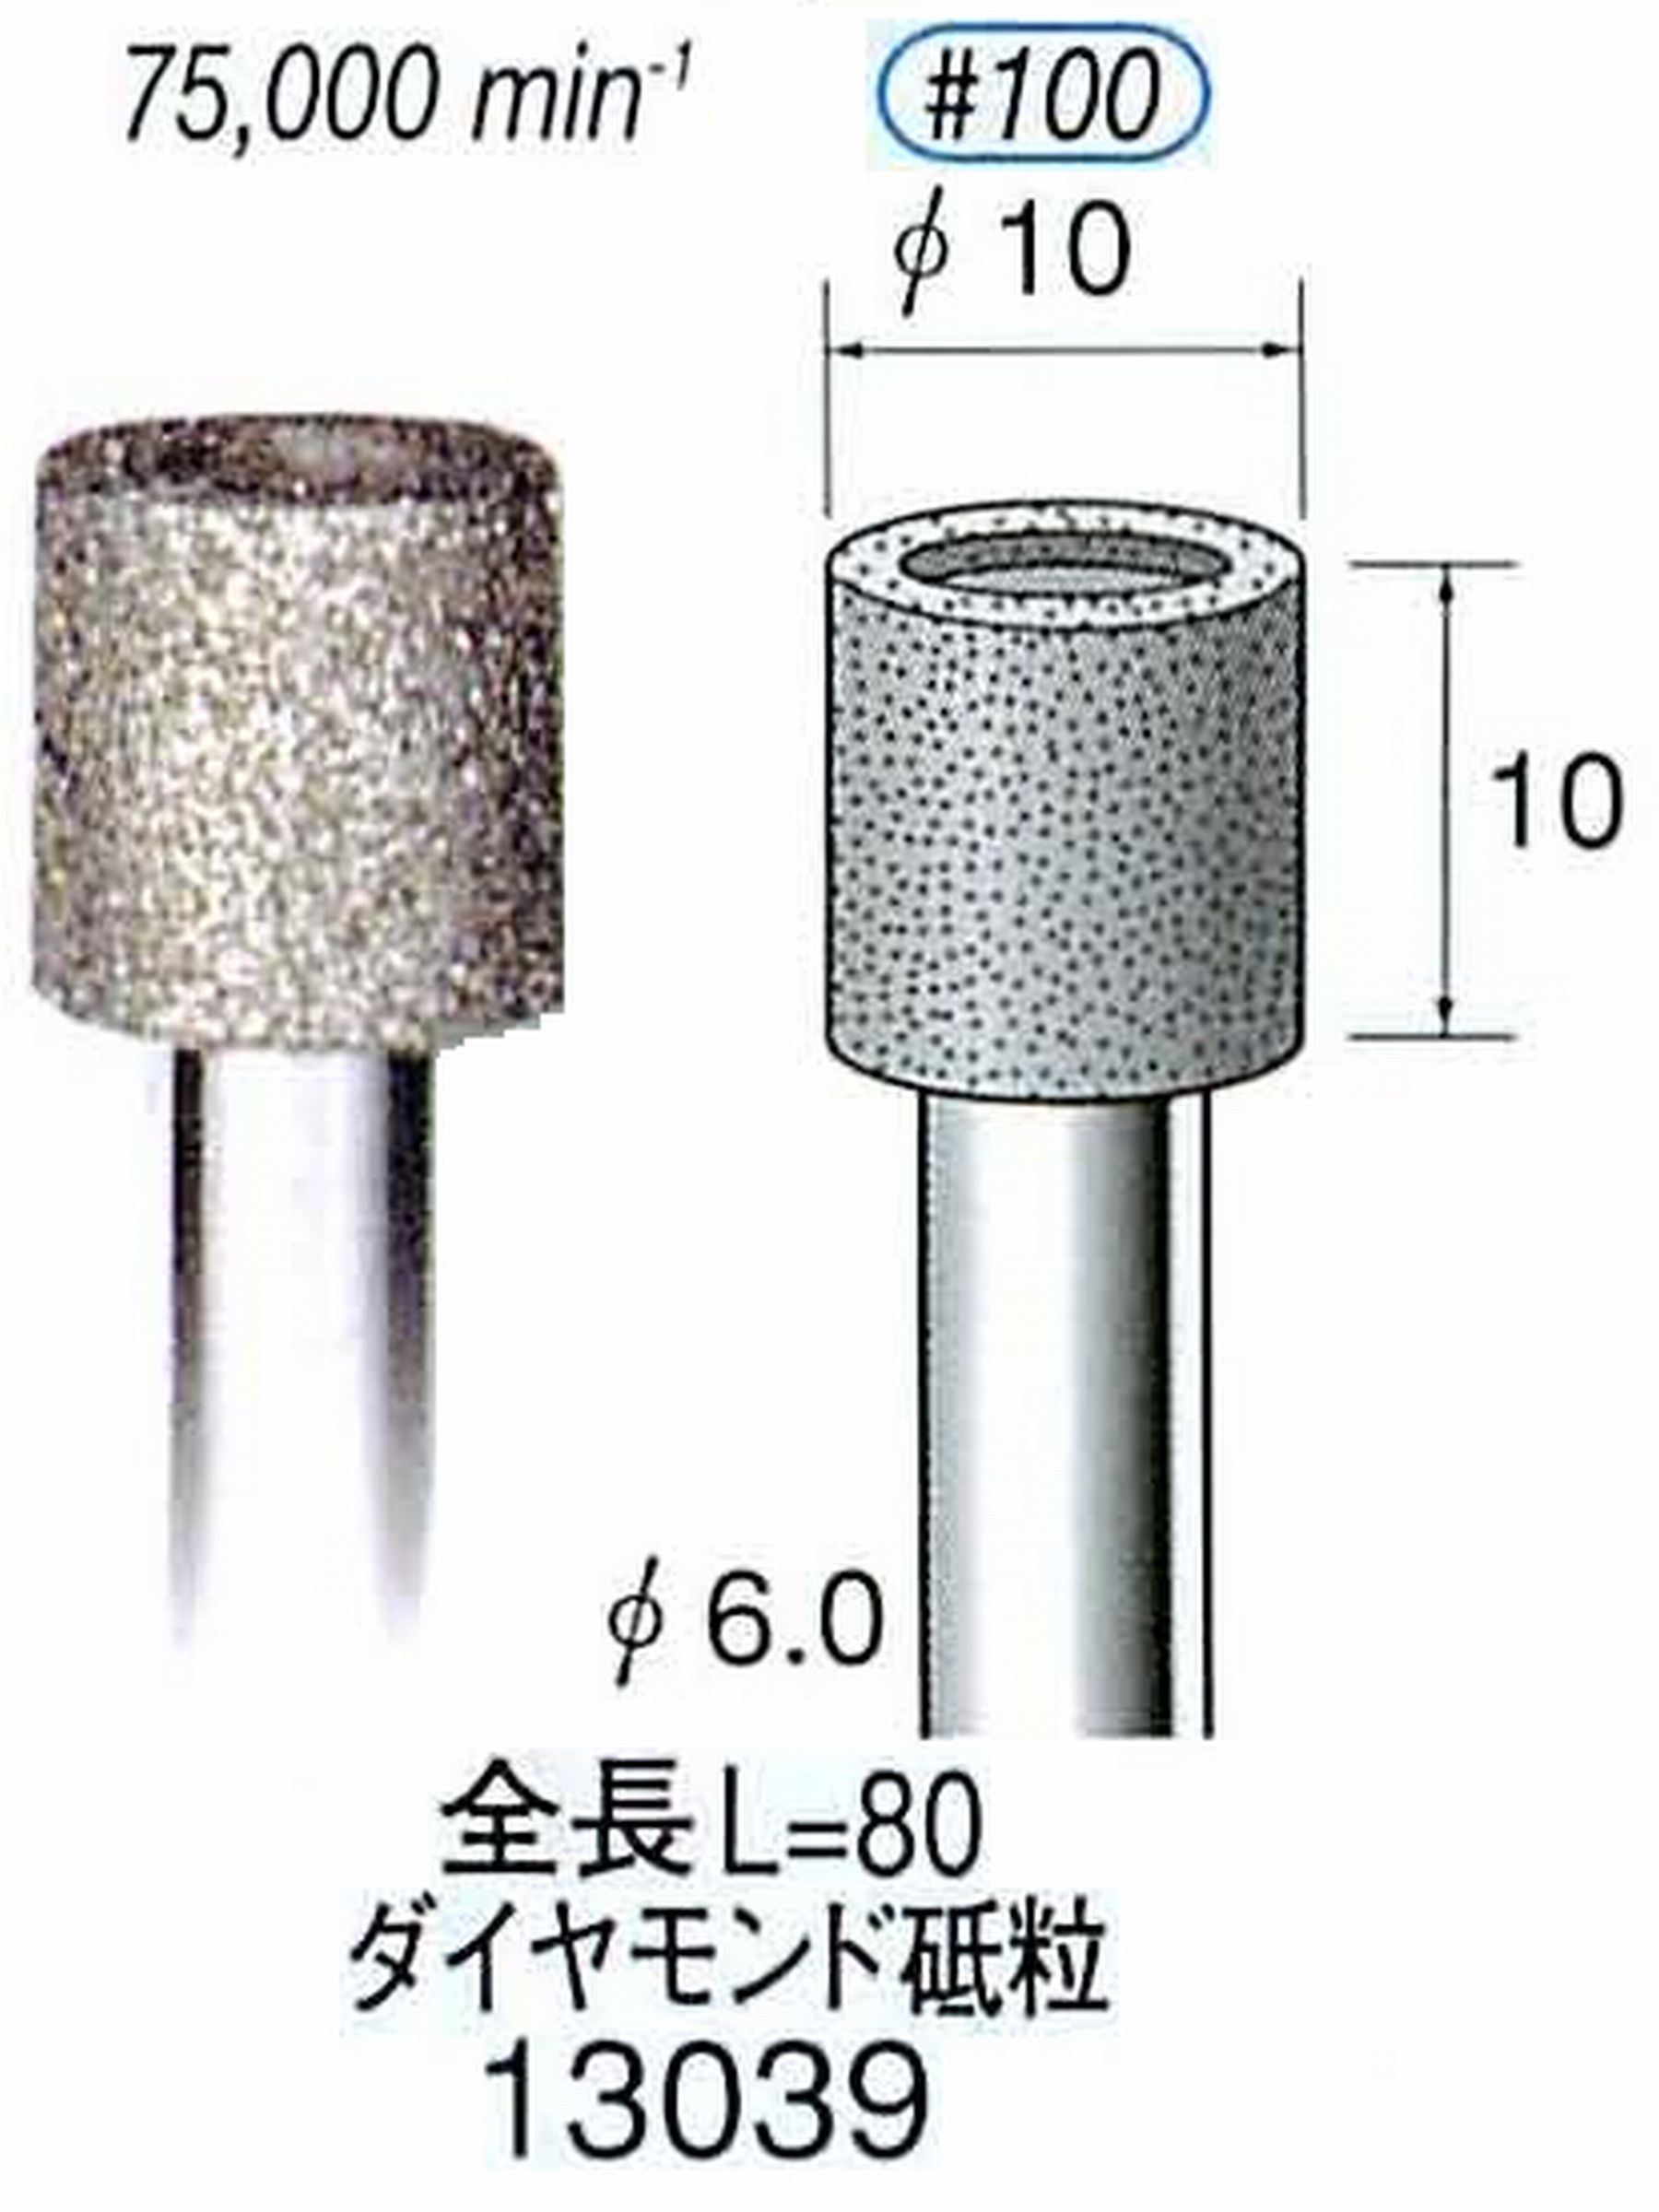 ナカニシ/NAKANISHI 電着ダイヤモンド ダイヤモンド砥粒 軸径(シャンク)φ6.0mm 13039